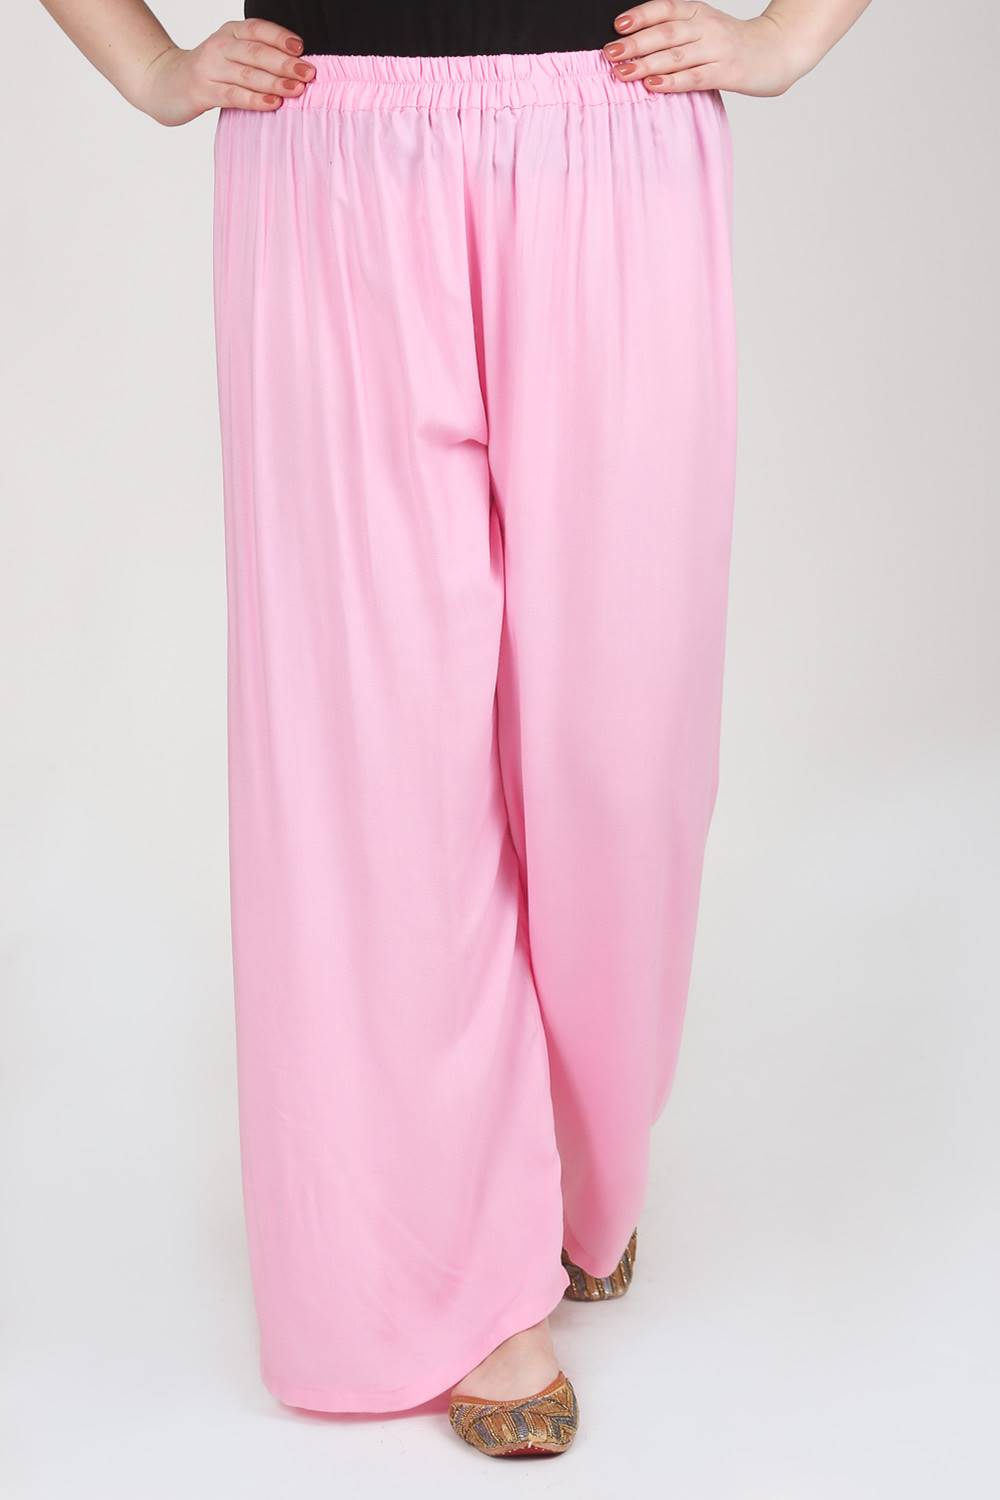 DRIES VAN NOTEN | Light pink Women's Casual Pants | YOOX